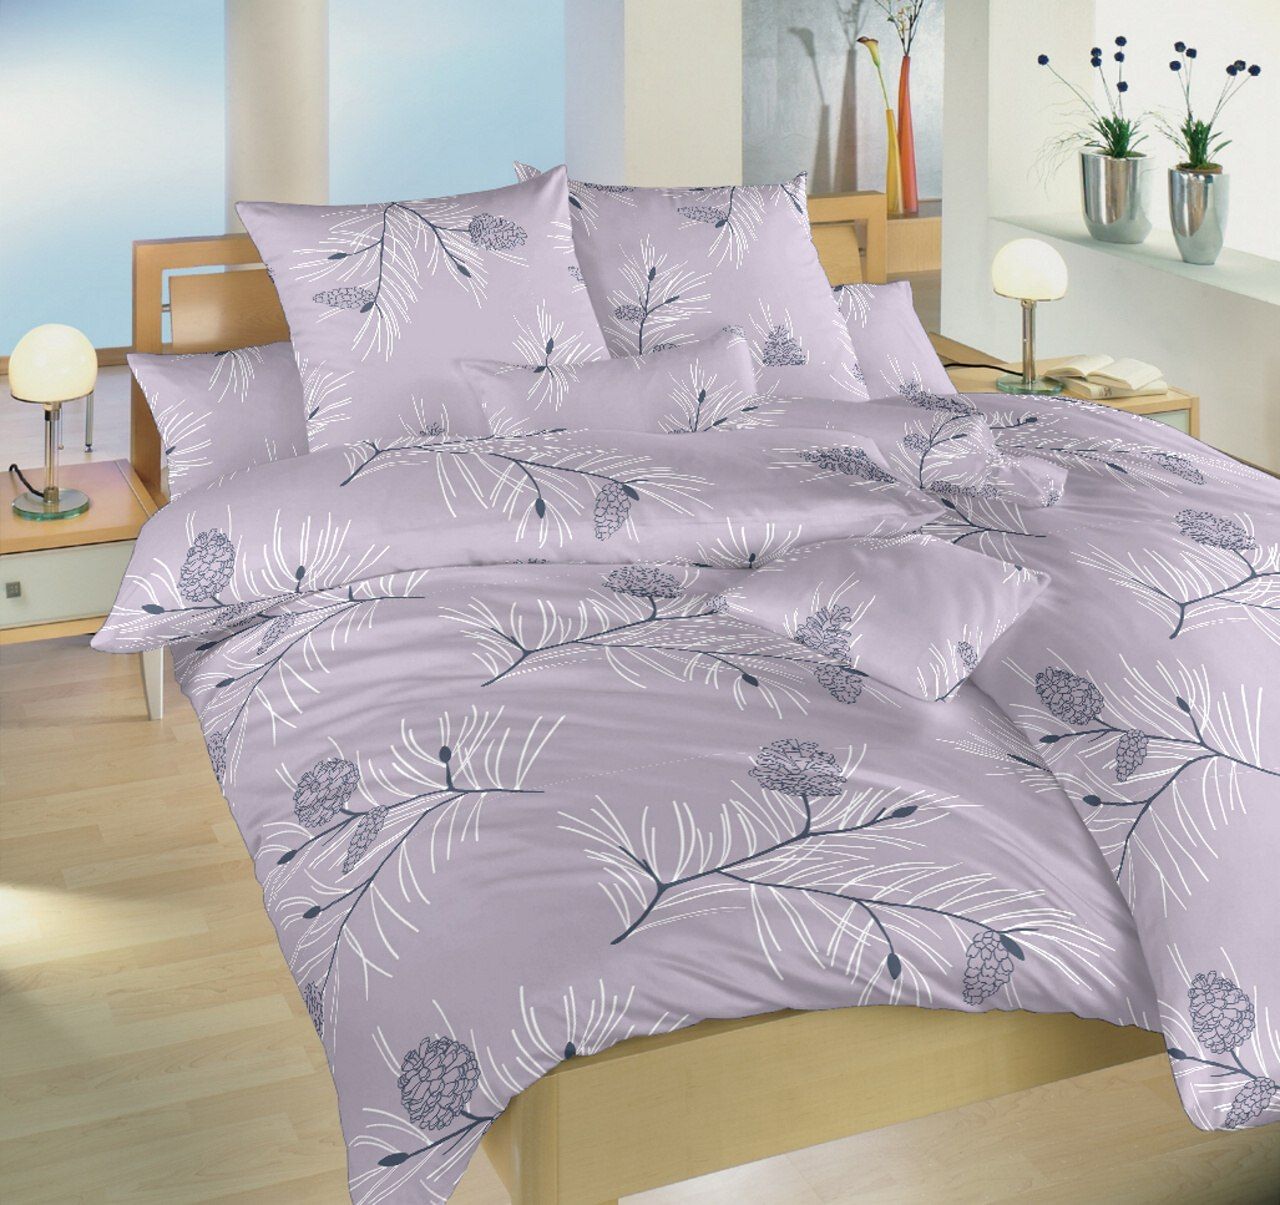 Dadka Povlečení bavlna Jehličí violet 220x220, 2x70x90 cm